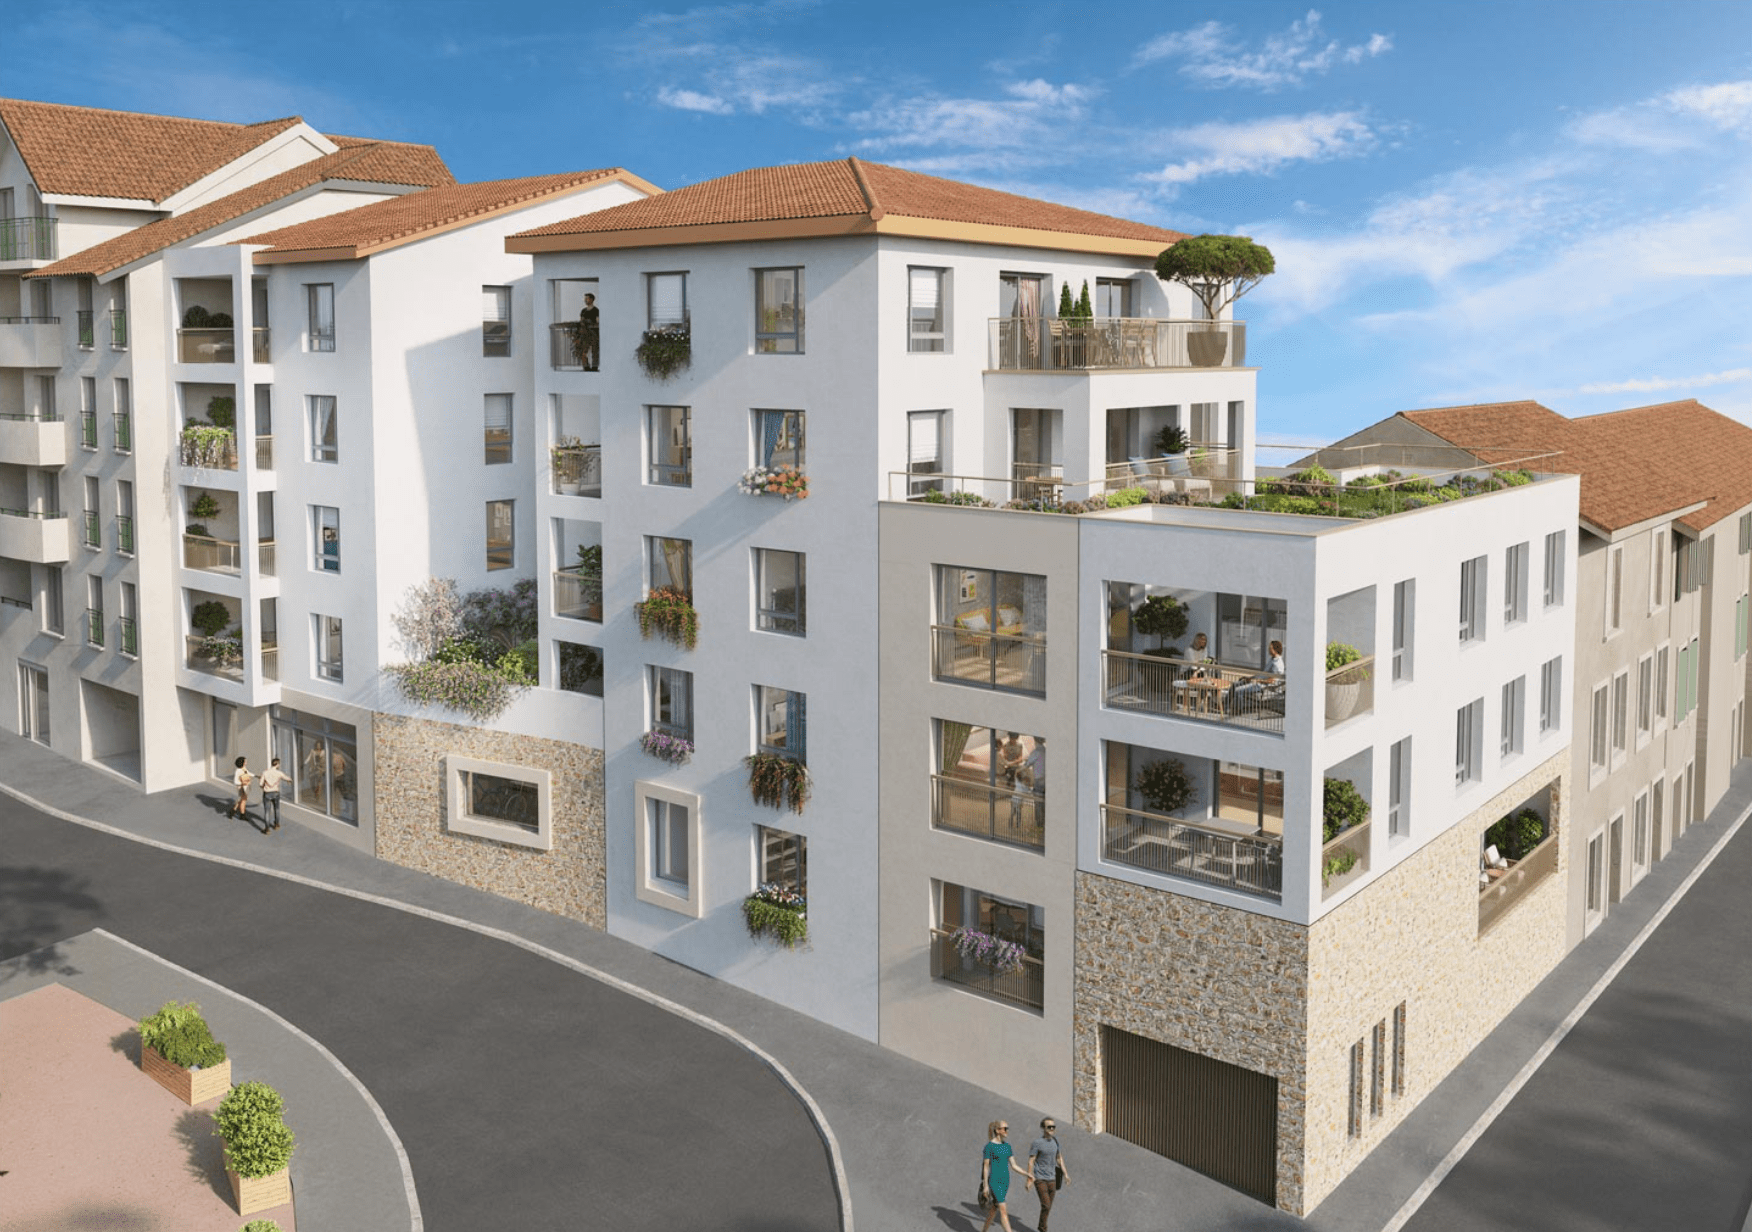 Programme immobilier KAB32 appartement à Bourgoin-Jallieu (38300) Au cœur du quartier Pont Saint-Michel